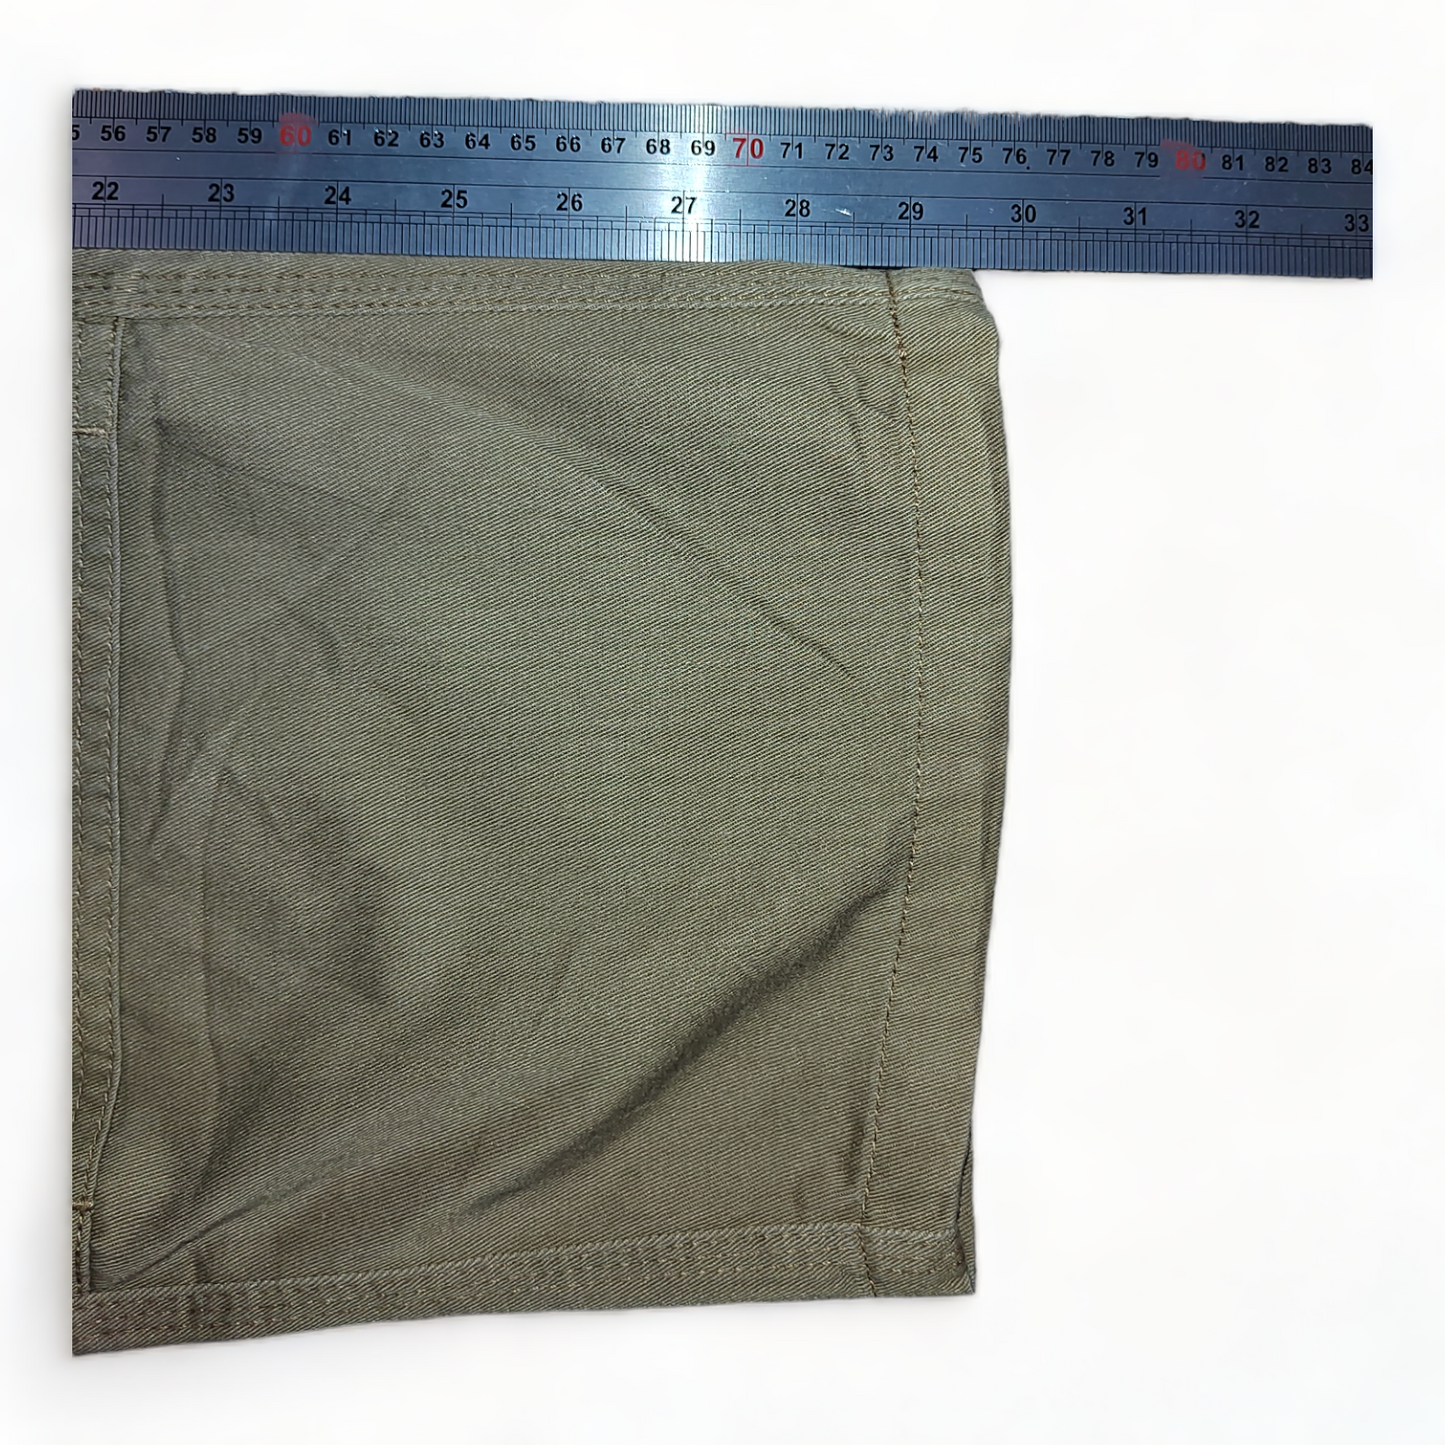 Dickies Carpenter Trousers Mens W34 Tan – 34 x 29